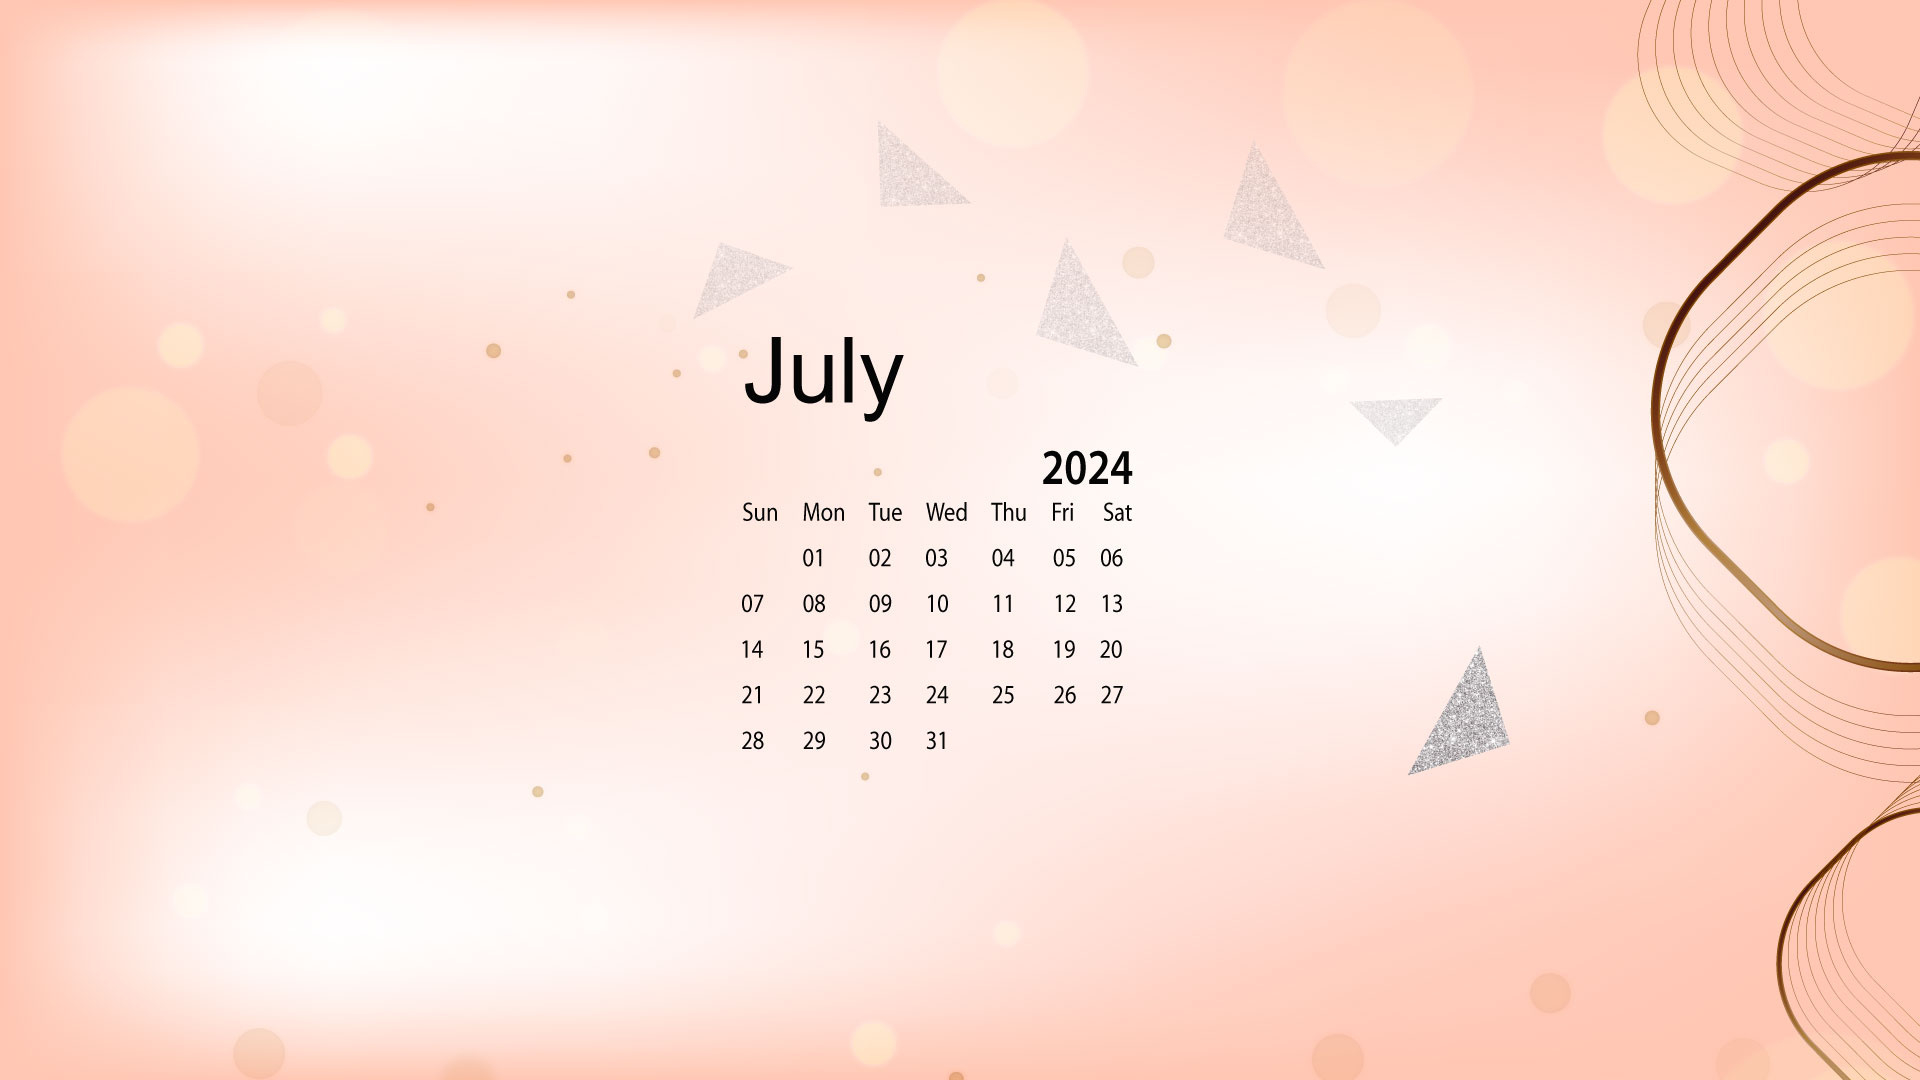 July 2024 Desktop Wallpaper Calendar - Calendarlabs intended for July Calendar 2024 Desktop Wallpaper